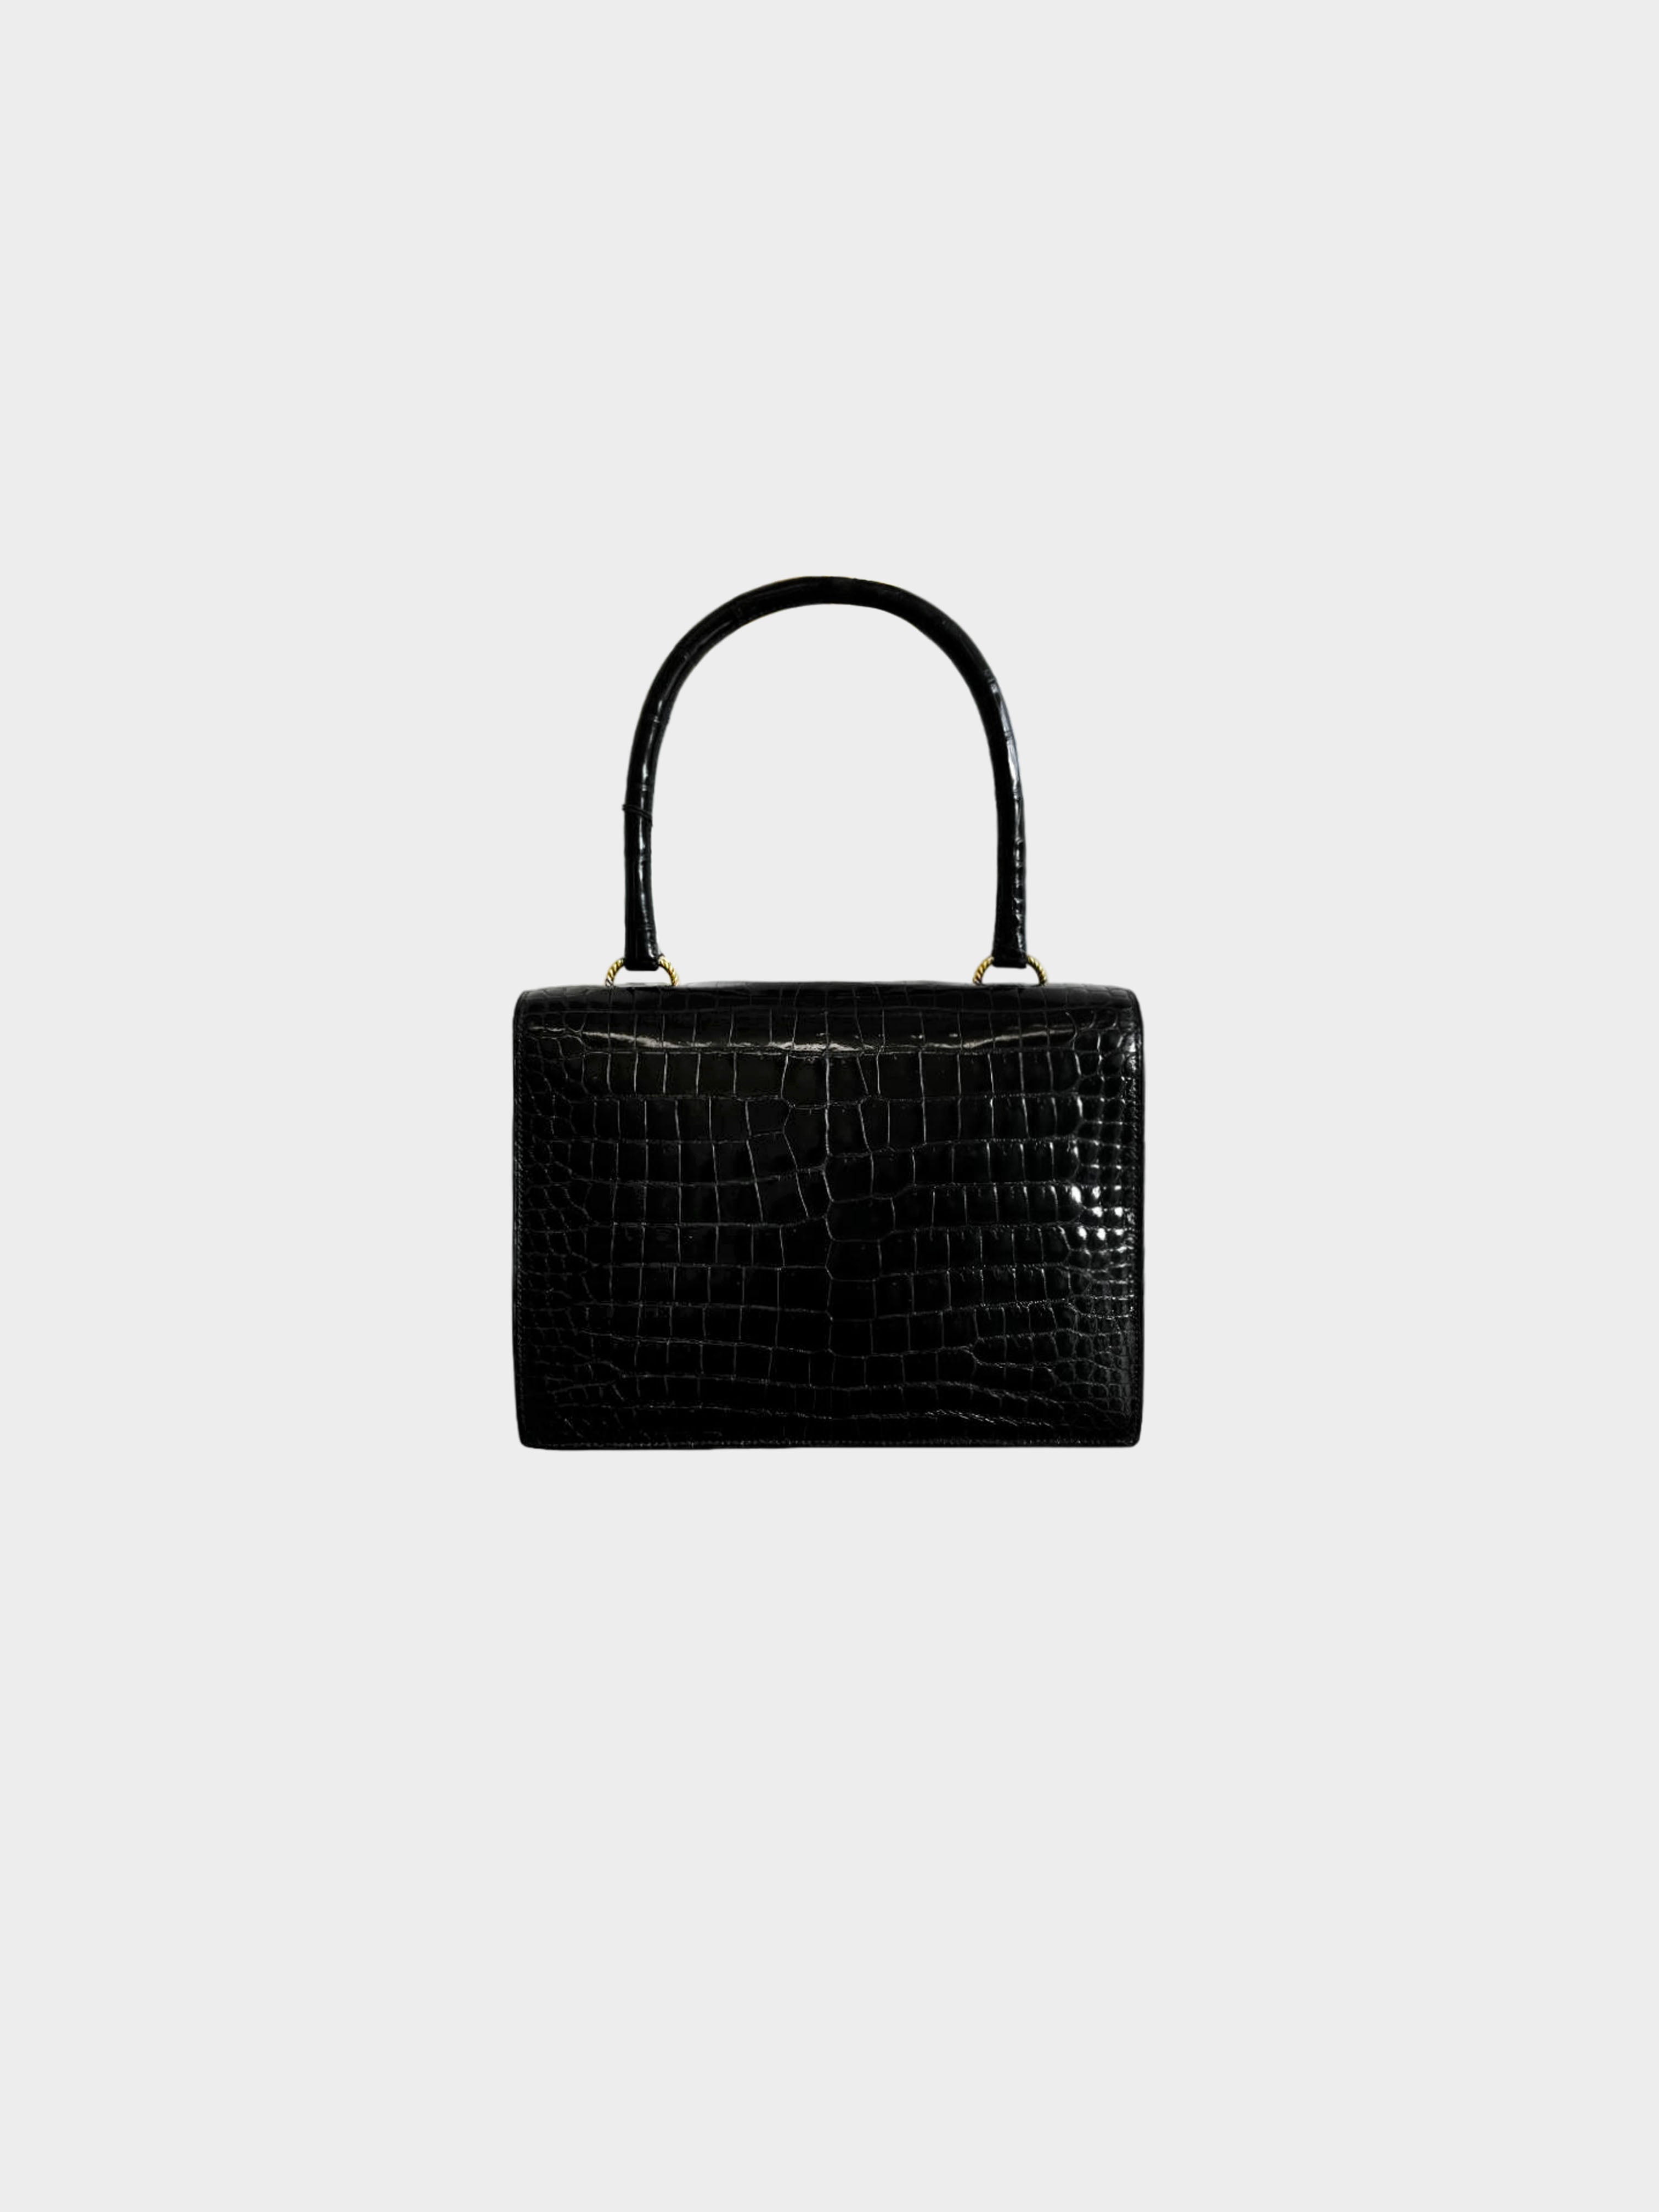 Hermès 1960s Black Sac Vasco Handbag